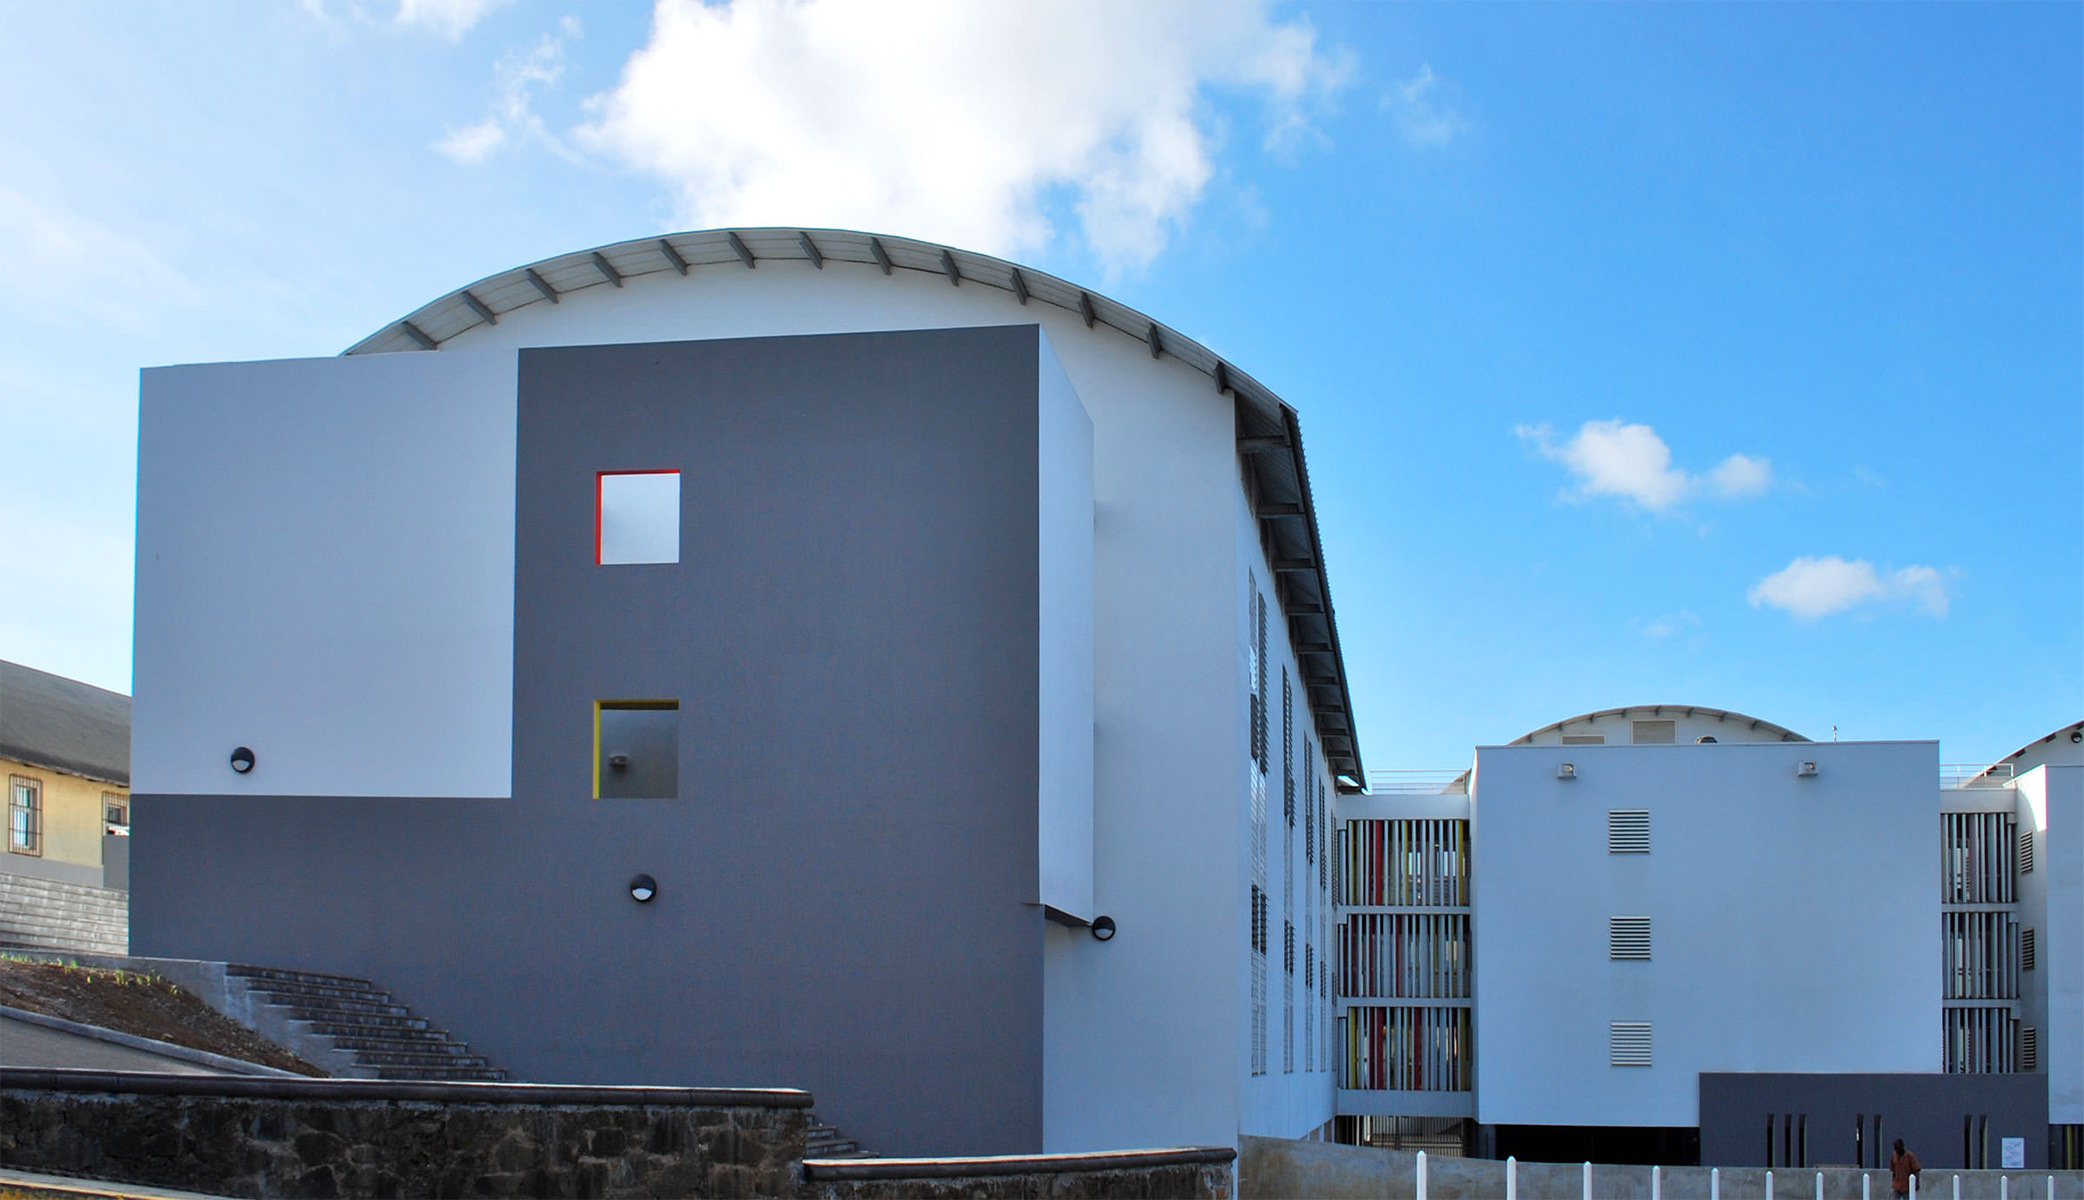 Photographie de l'ensemble du bâtiment, avec les ouvertures et ventelles colorées et les toitures courbes